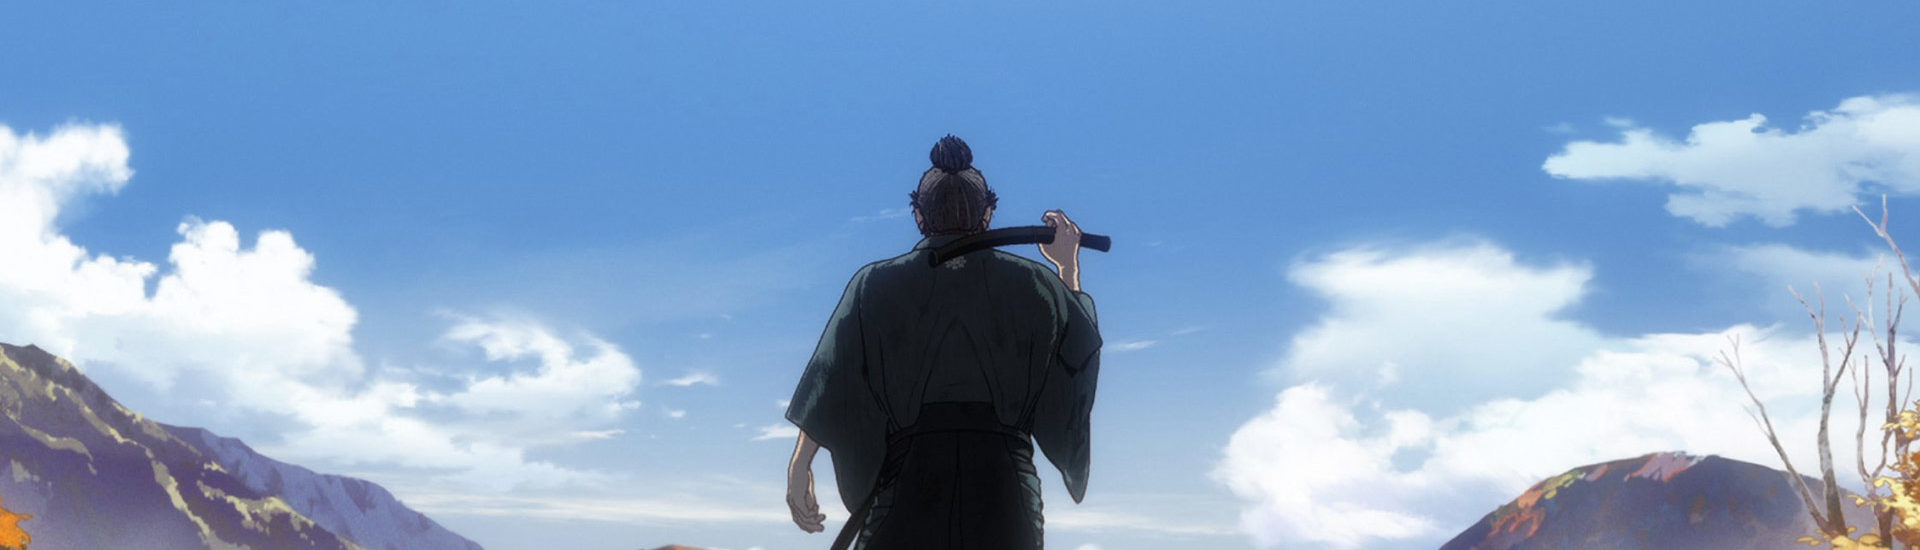 Onimusha erhält eine Anime-Adaption